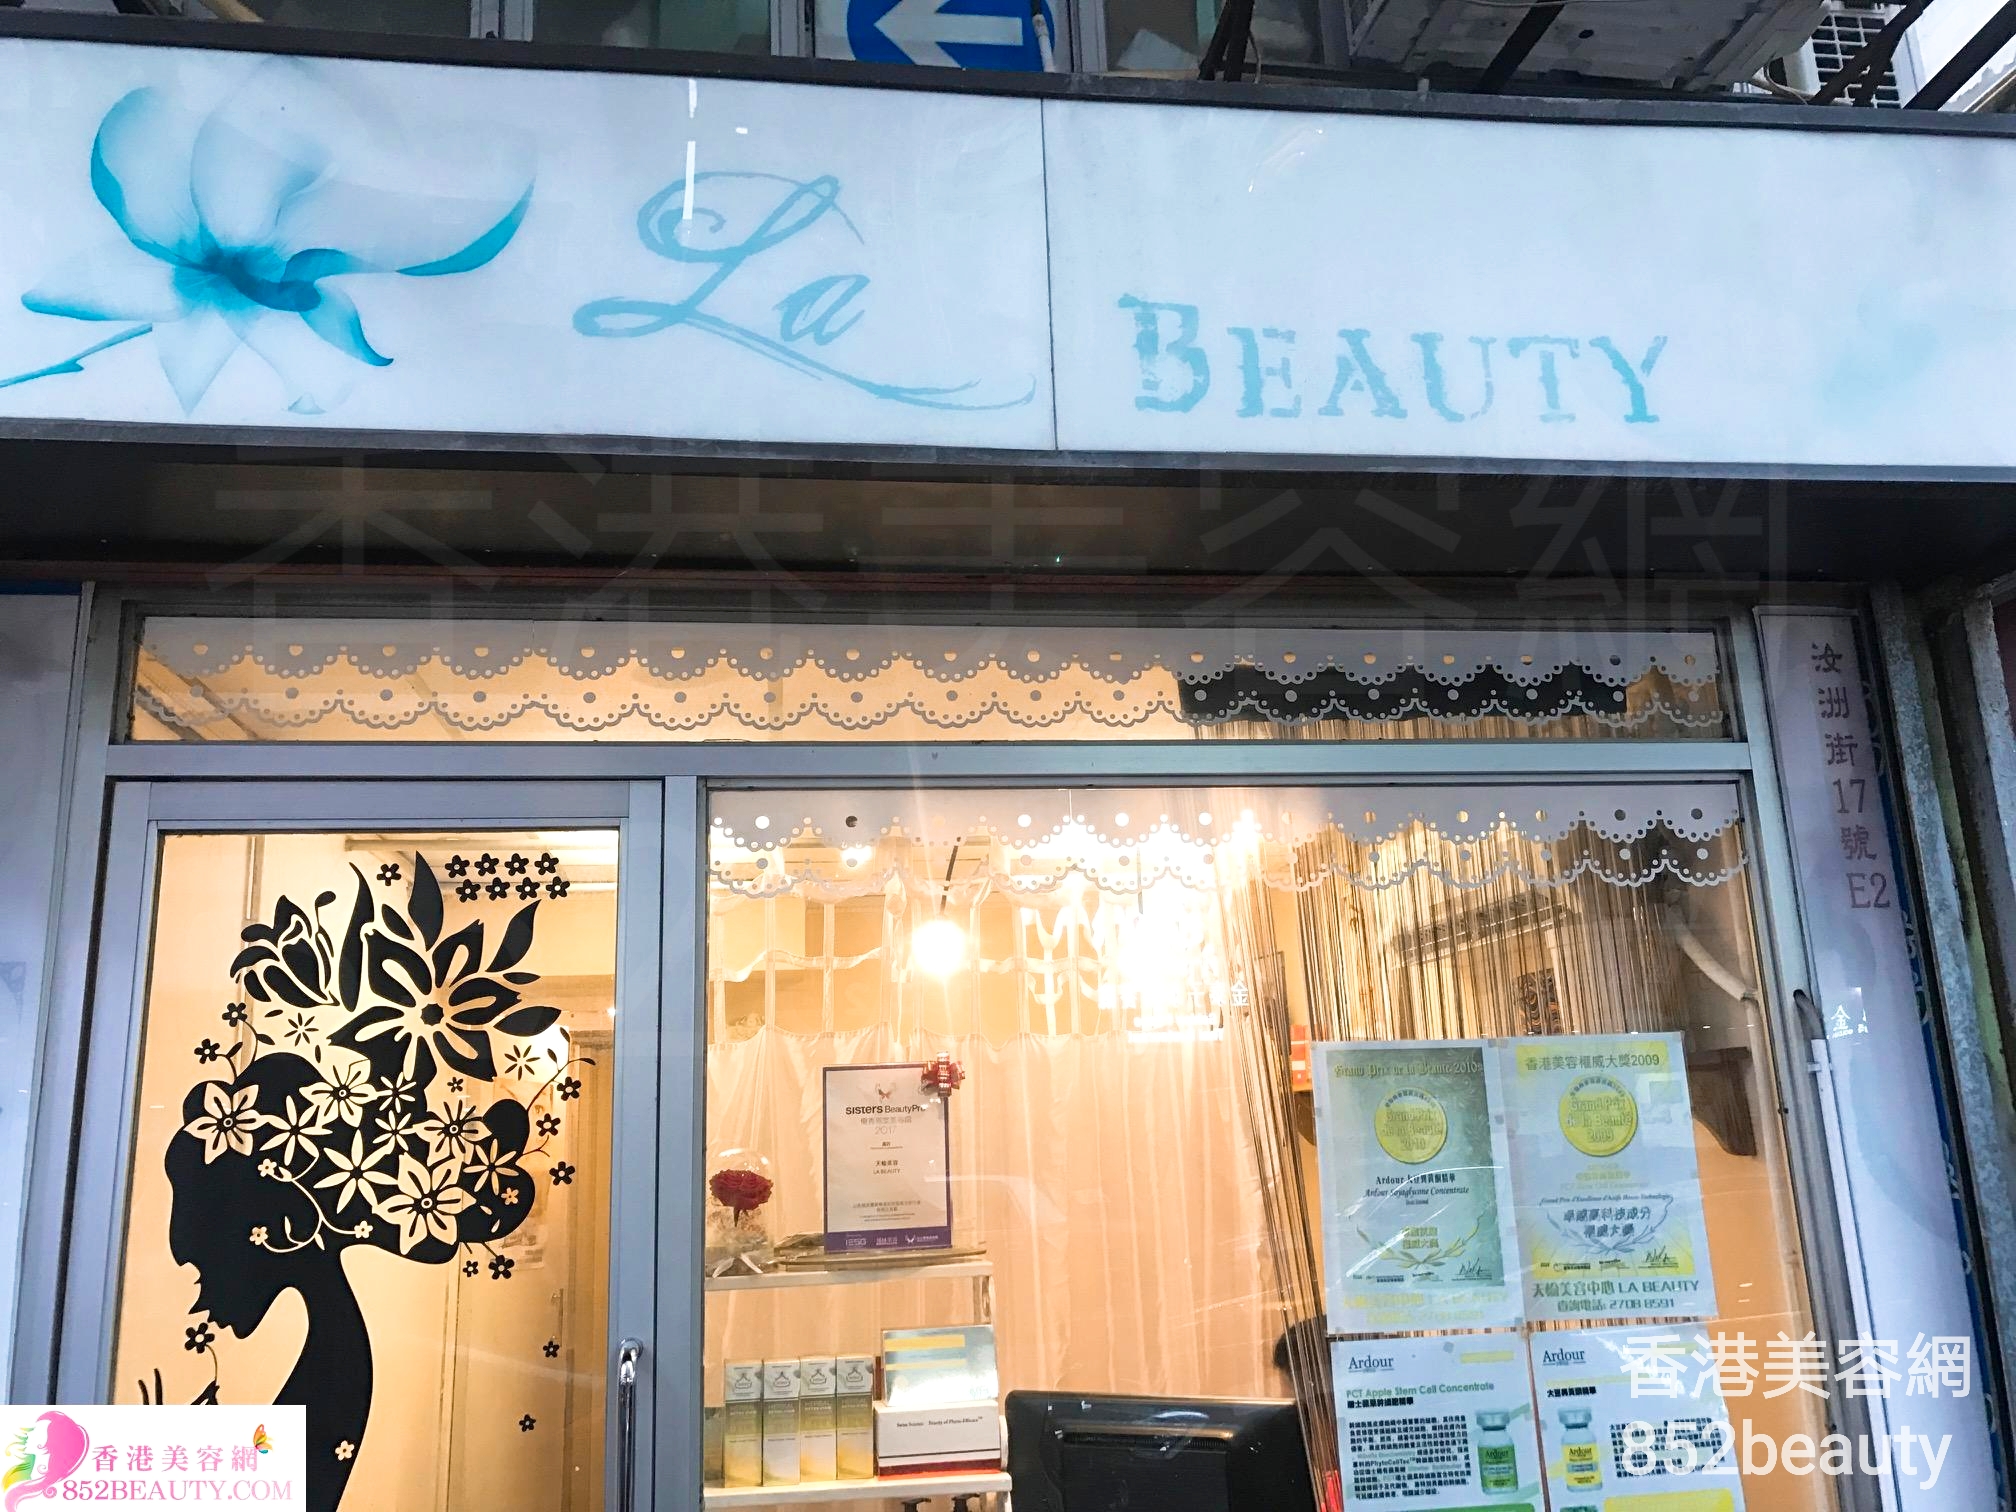 香港美容網 Hong Kong Beauty Salon 美容院 / 美容師: La Beauty 天榆美容中心